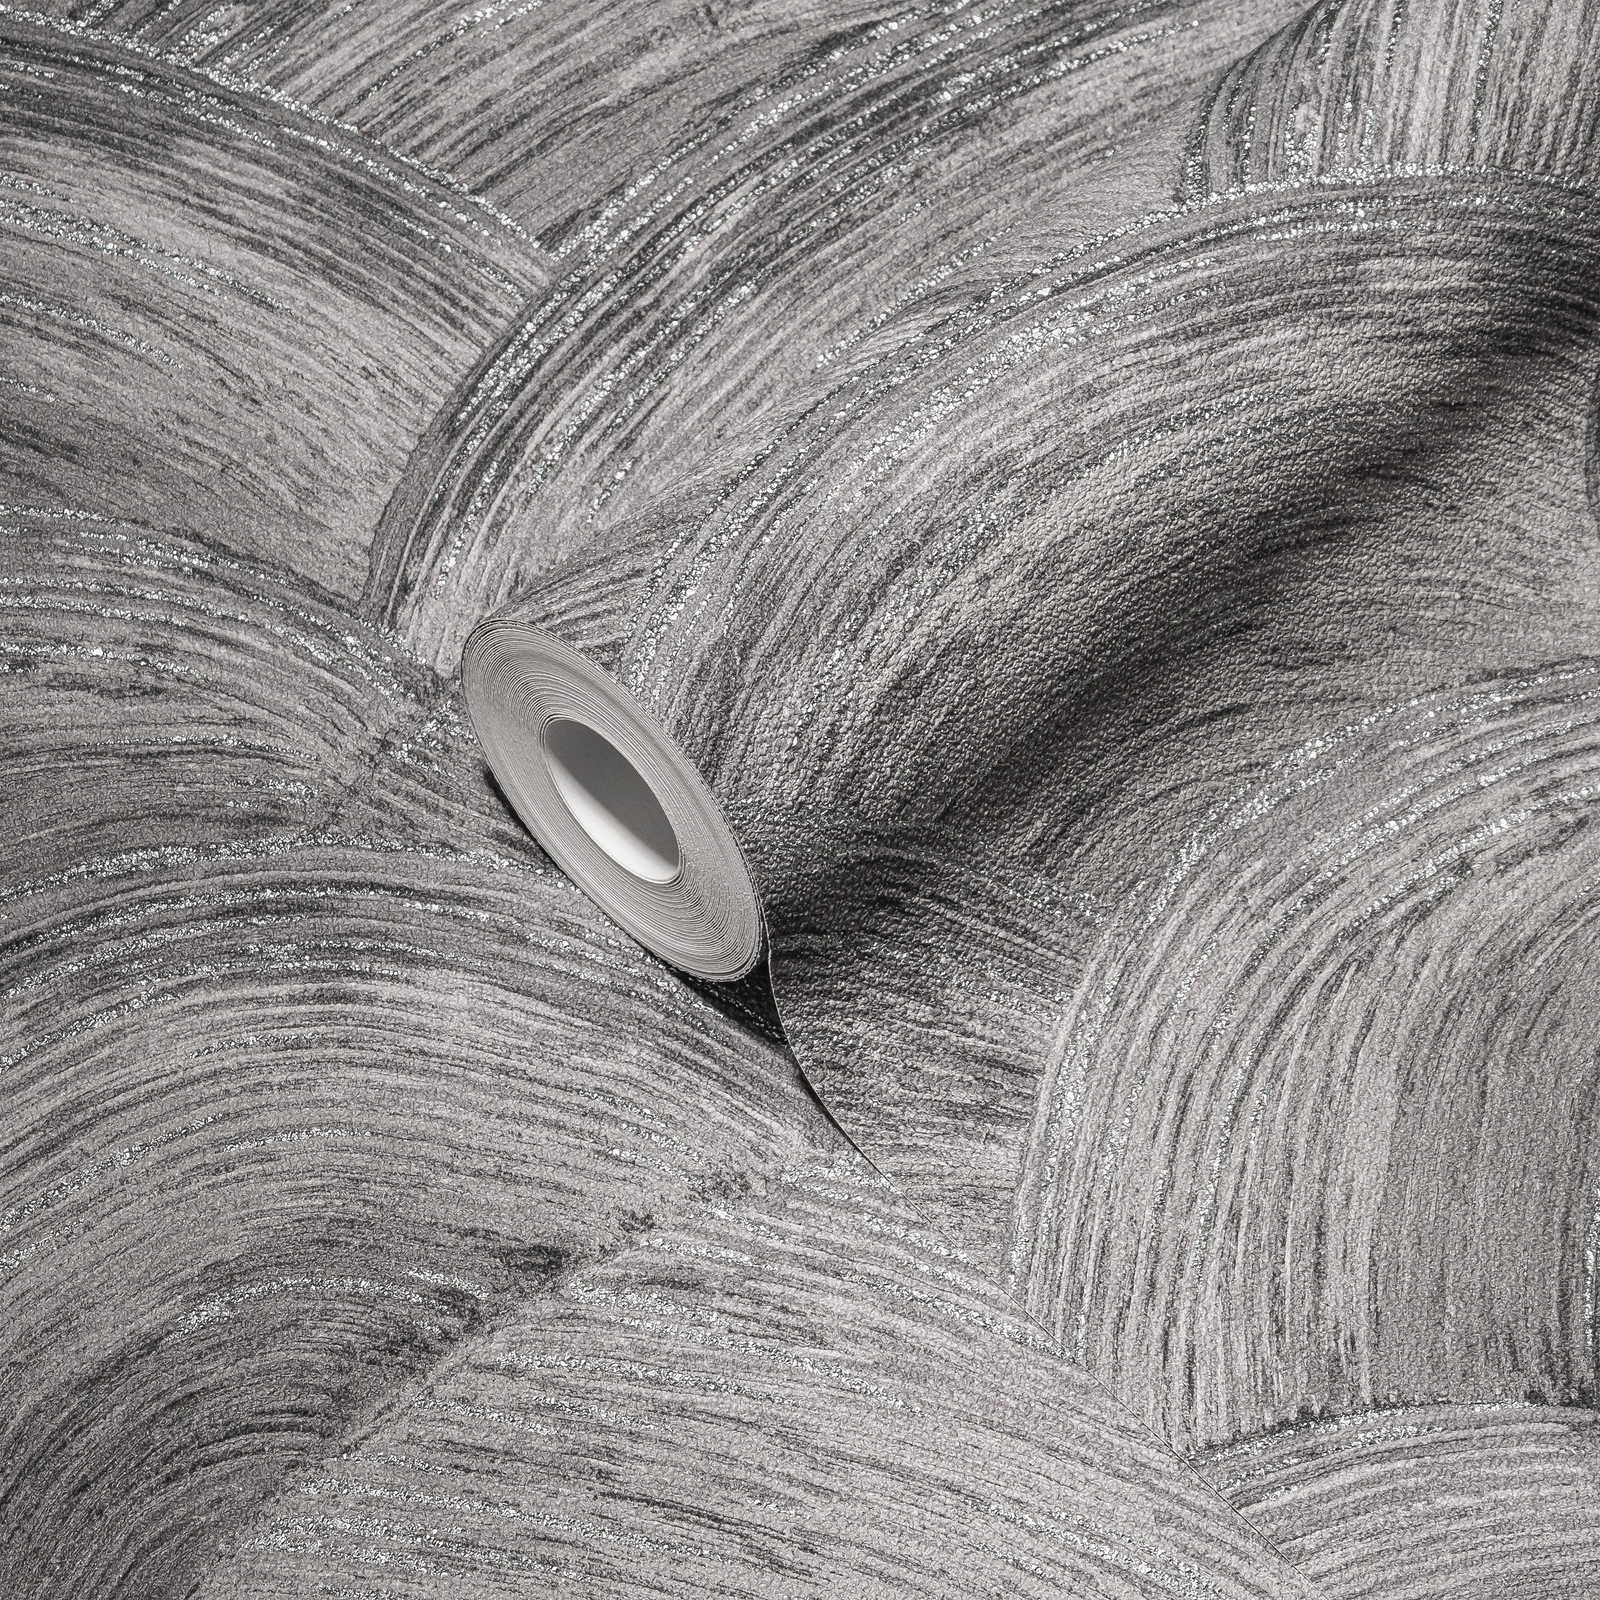             Papier peint intissé à structure gaufrée & effet brillant - gris, argenté
        